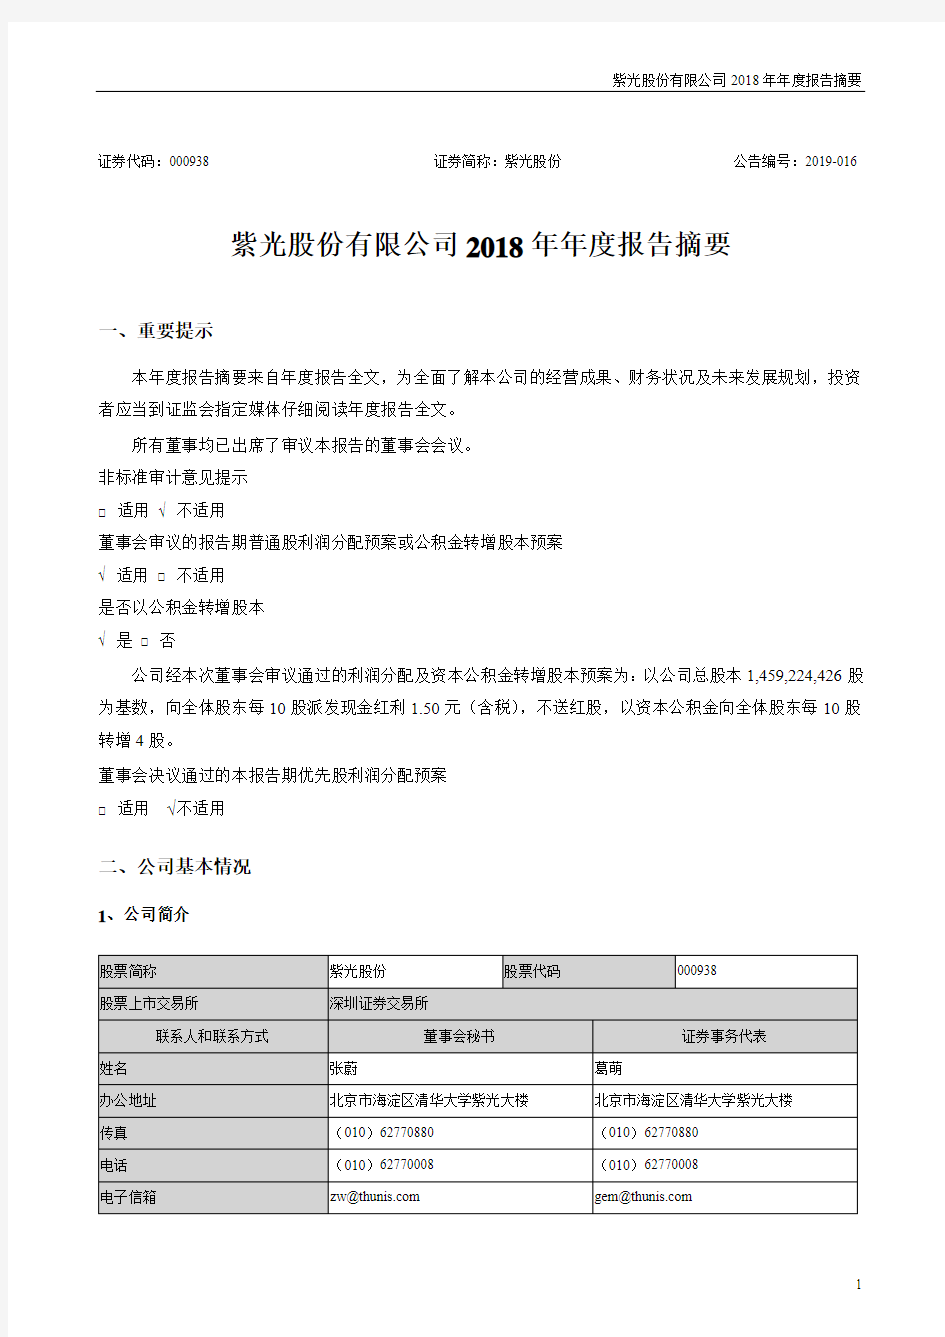 紫光股份有限公司2018年报告摘要.pdf